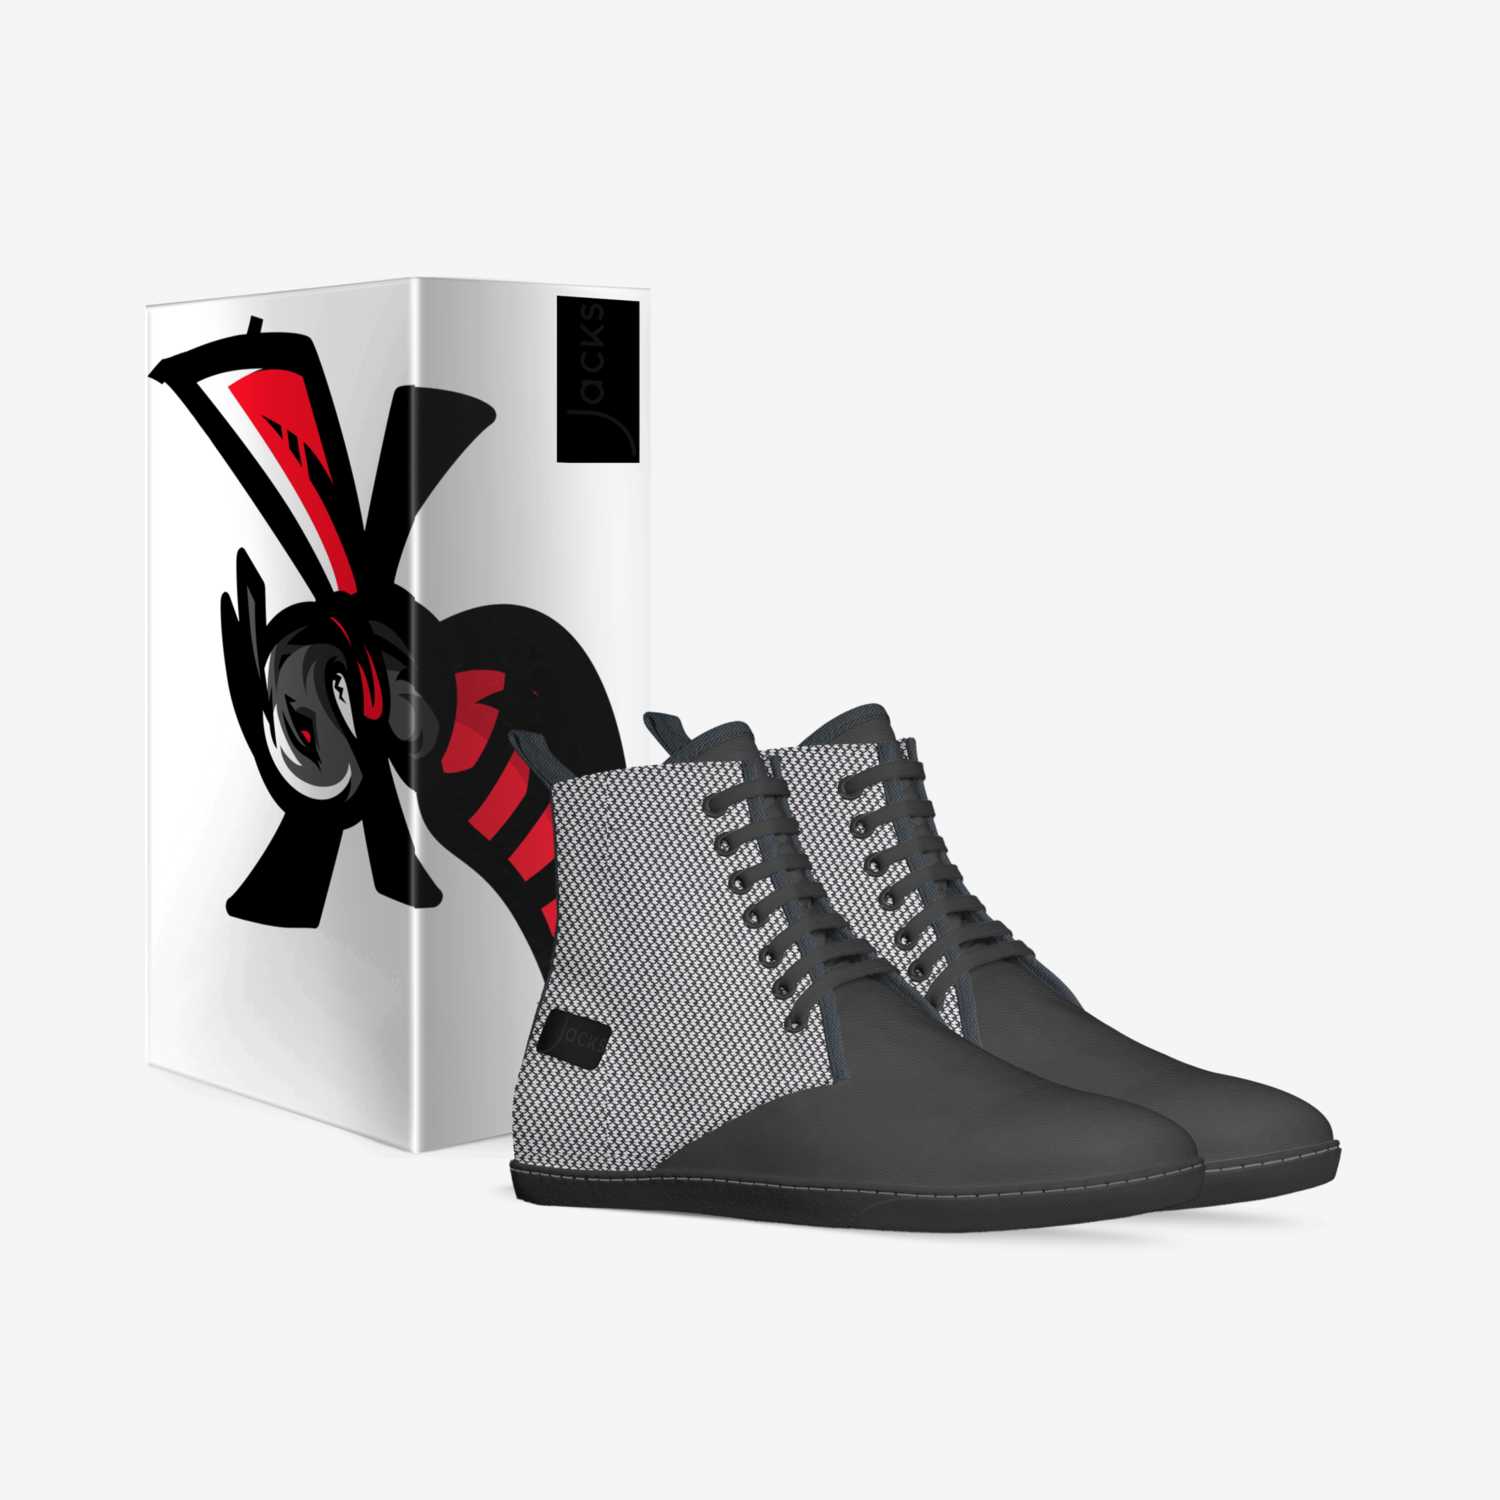 The Midnight  custom made in Italy shoes by Marvin Ricks Latoya Jackson | Box view